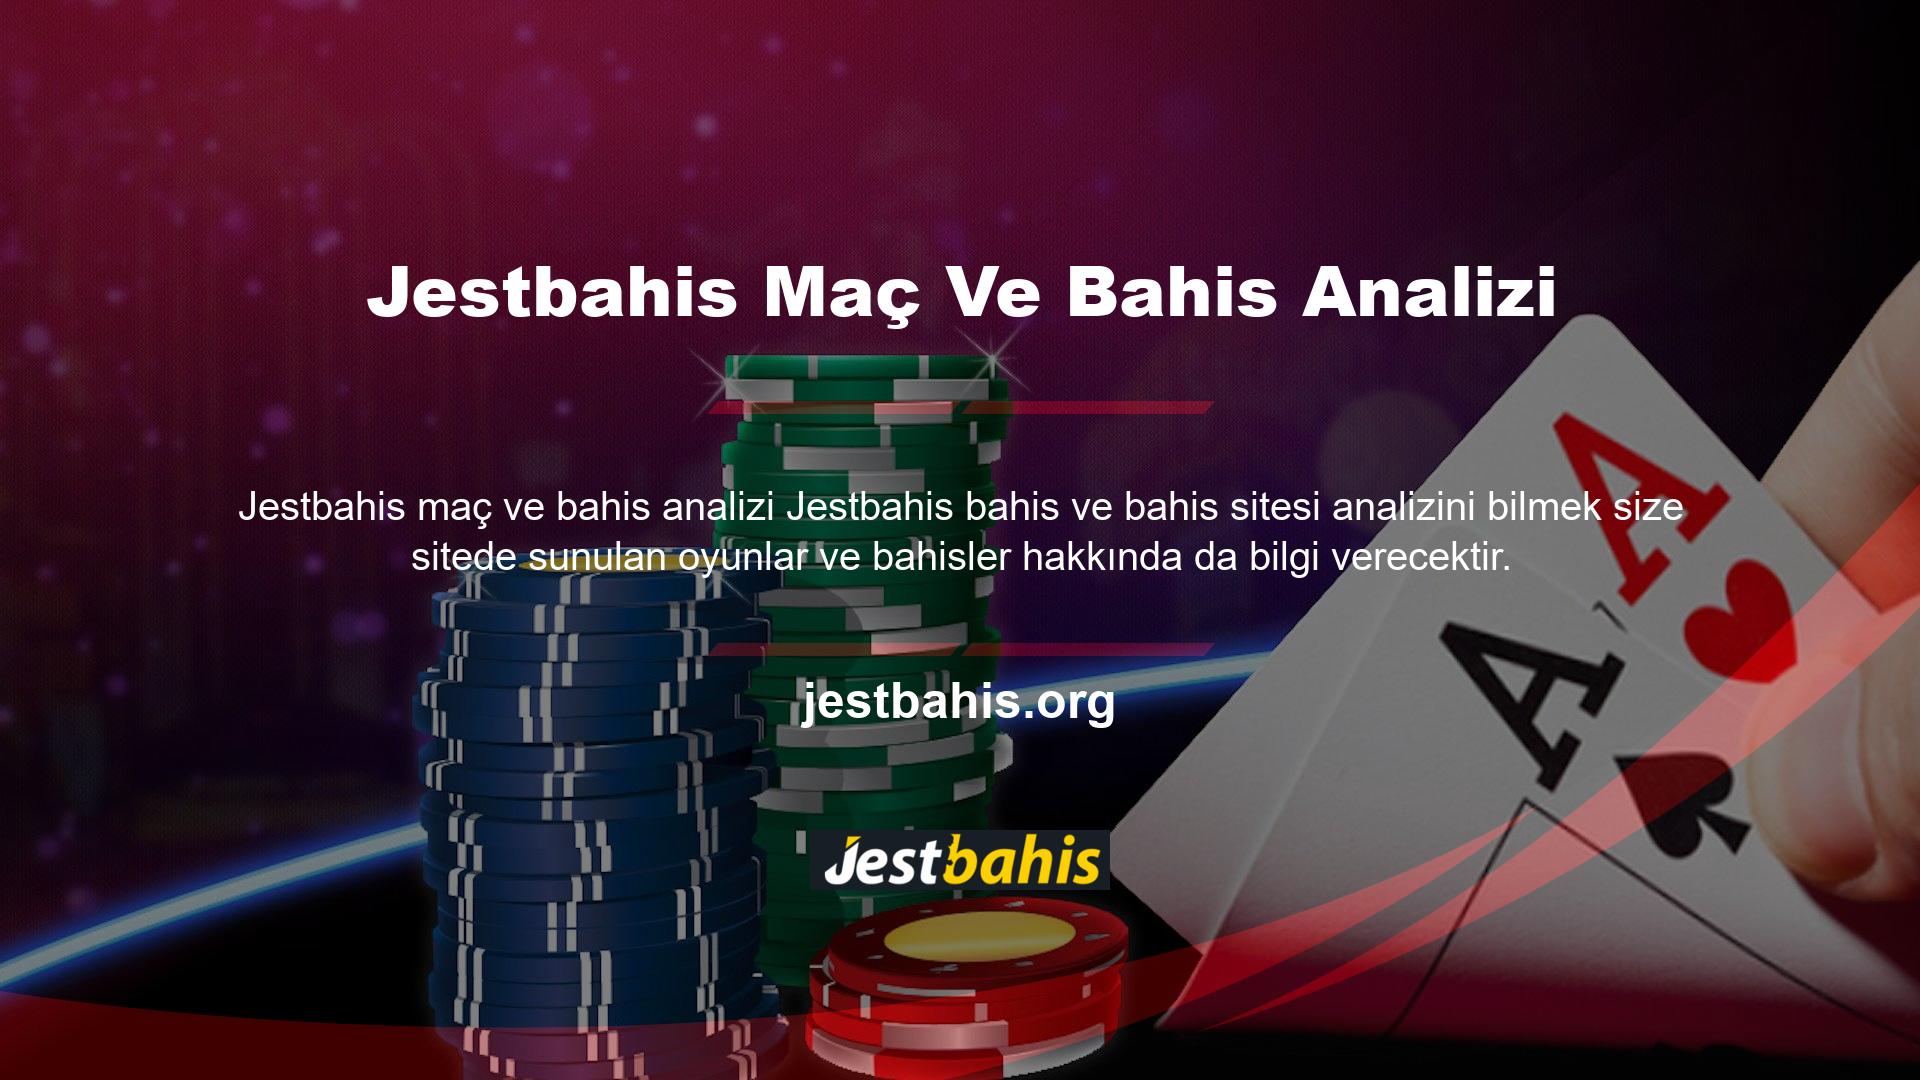 Casino oyunları hakkında piyasalardan daha fazla bilgi sahibi olan siteler bu analizden olumlu kazanç sağlayabilir